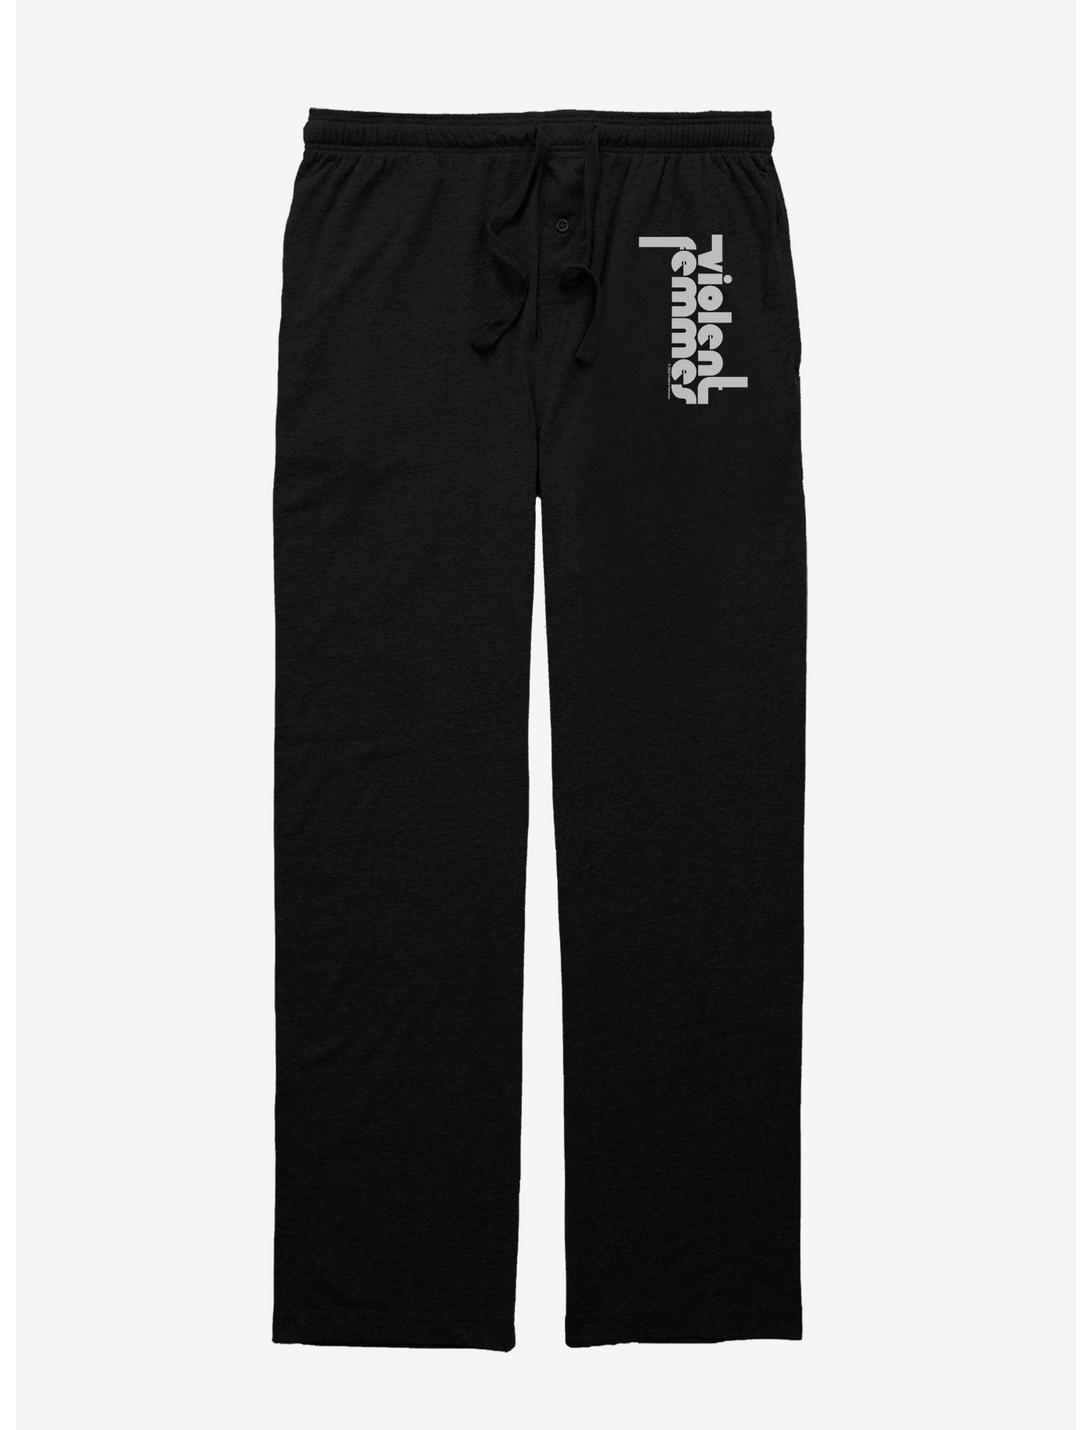 Violent Femmes Classic Logo Pajama Pants, BLACK, hi-res